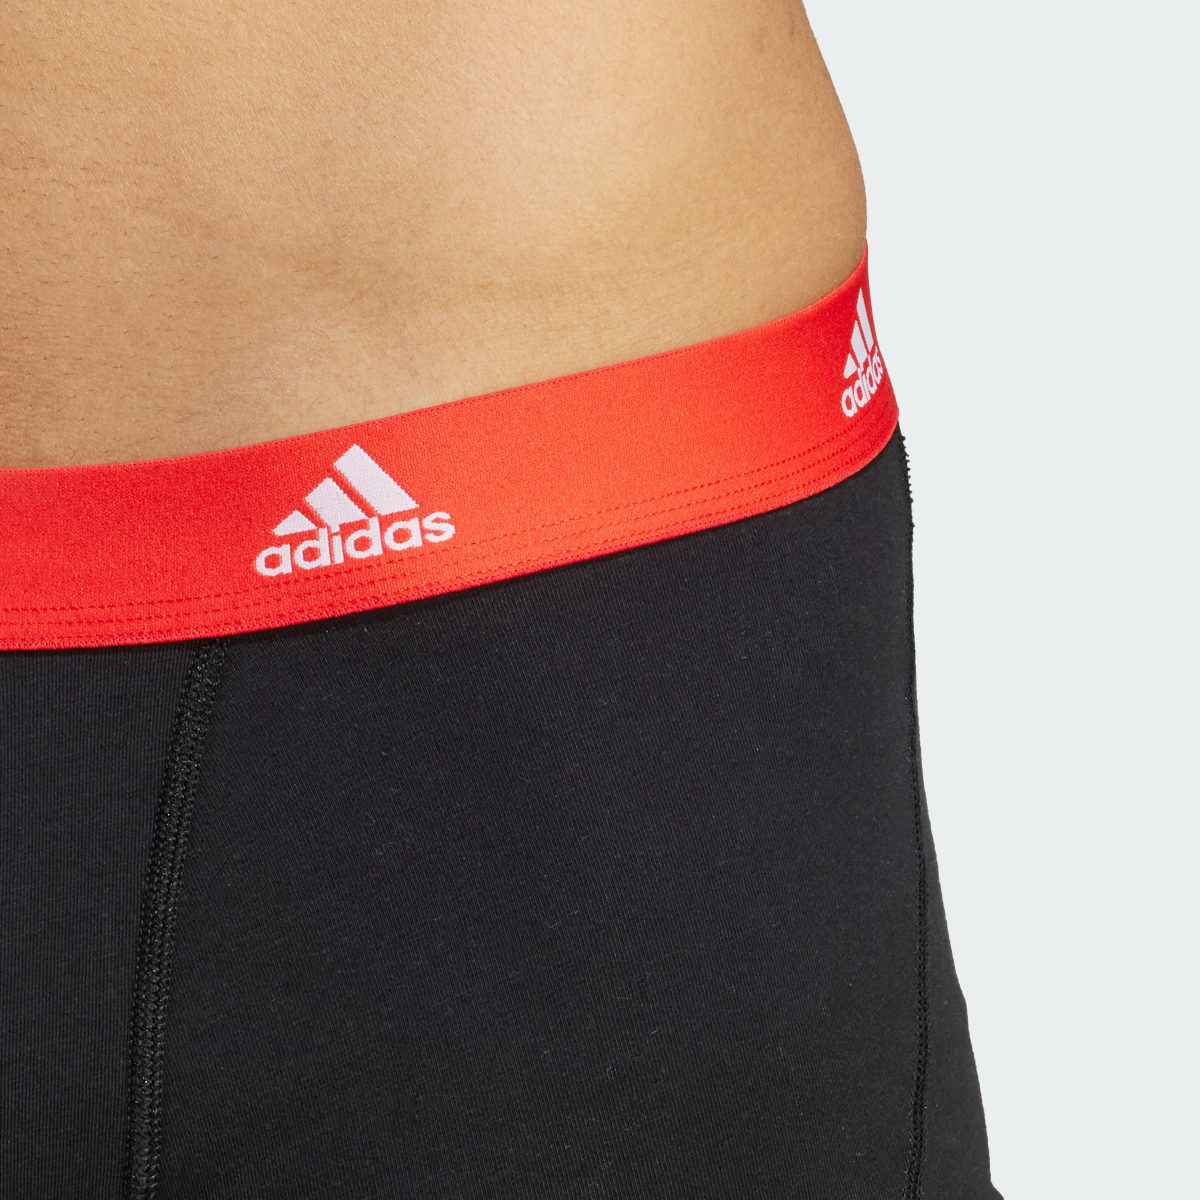 Adidas Active Flex Cotton Trunk Underwear (3 Pack). 7